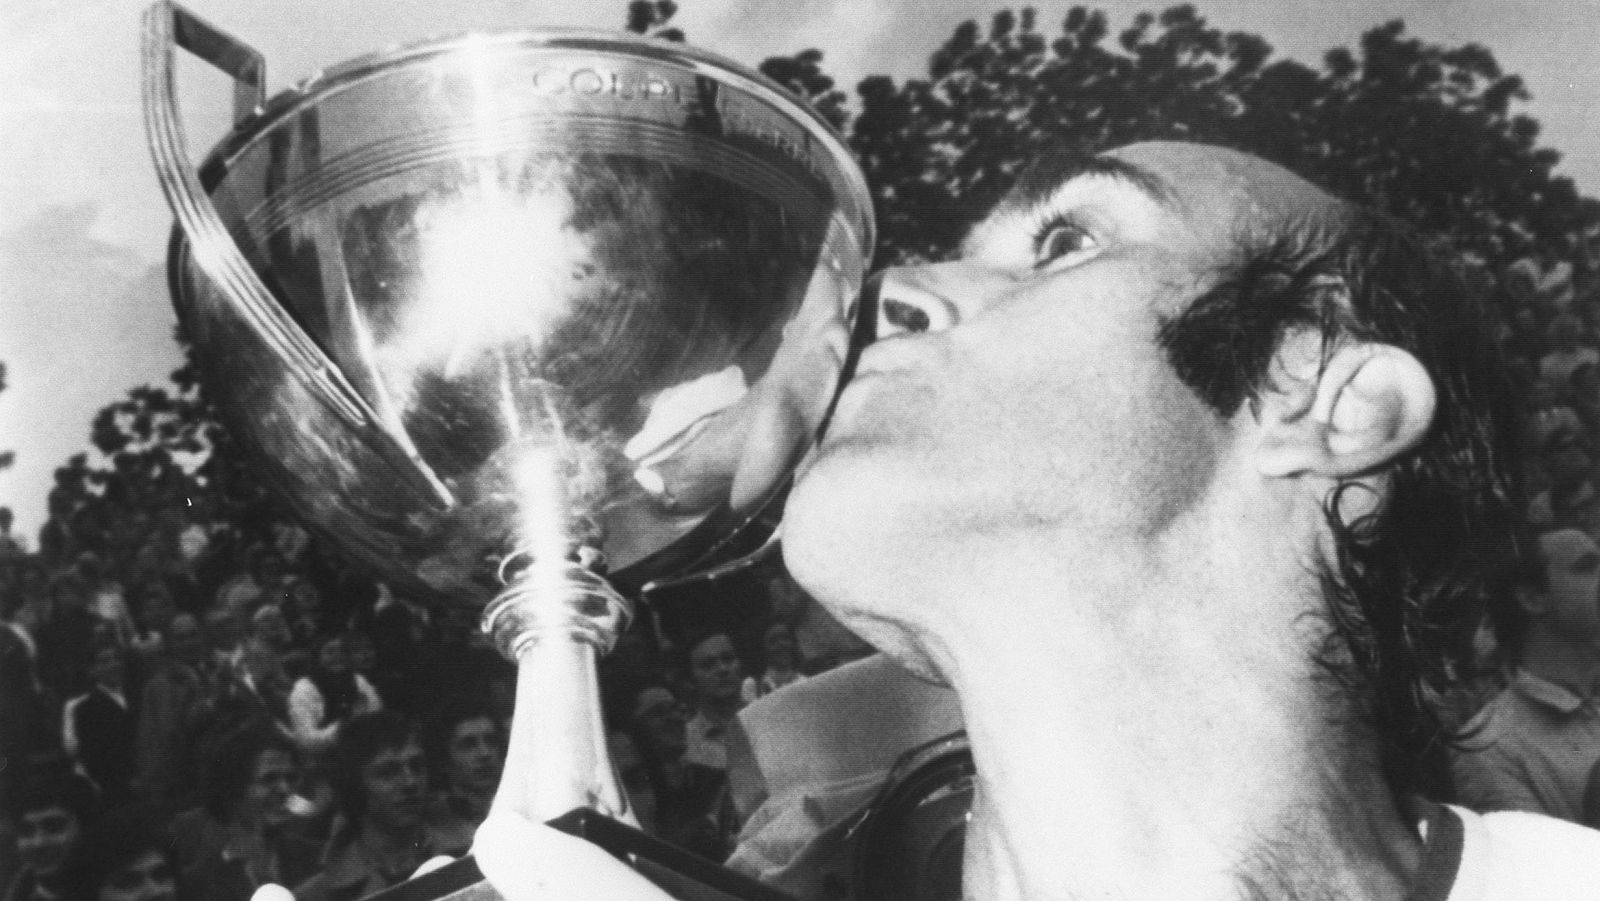 Muere Andrés Gimeno, pionero del tenis español - rtve.es